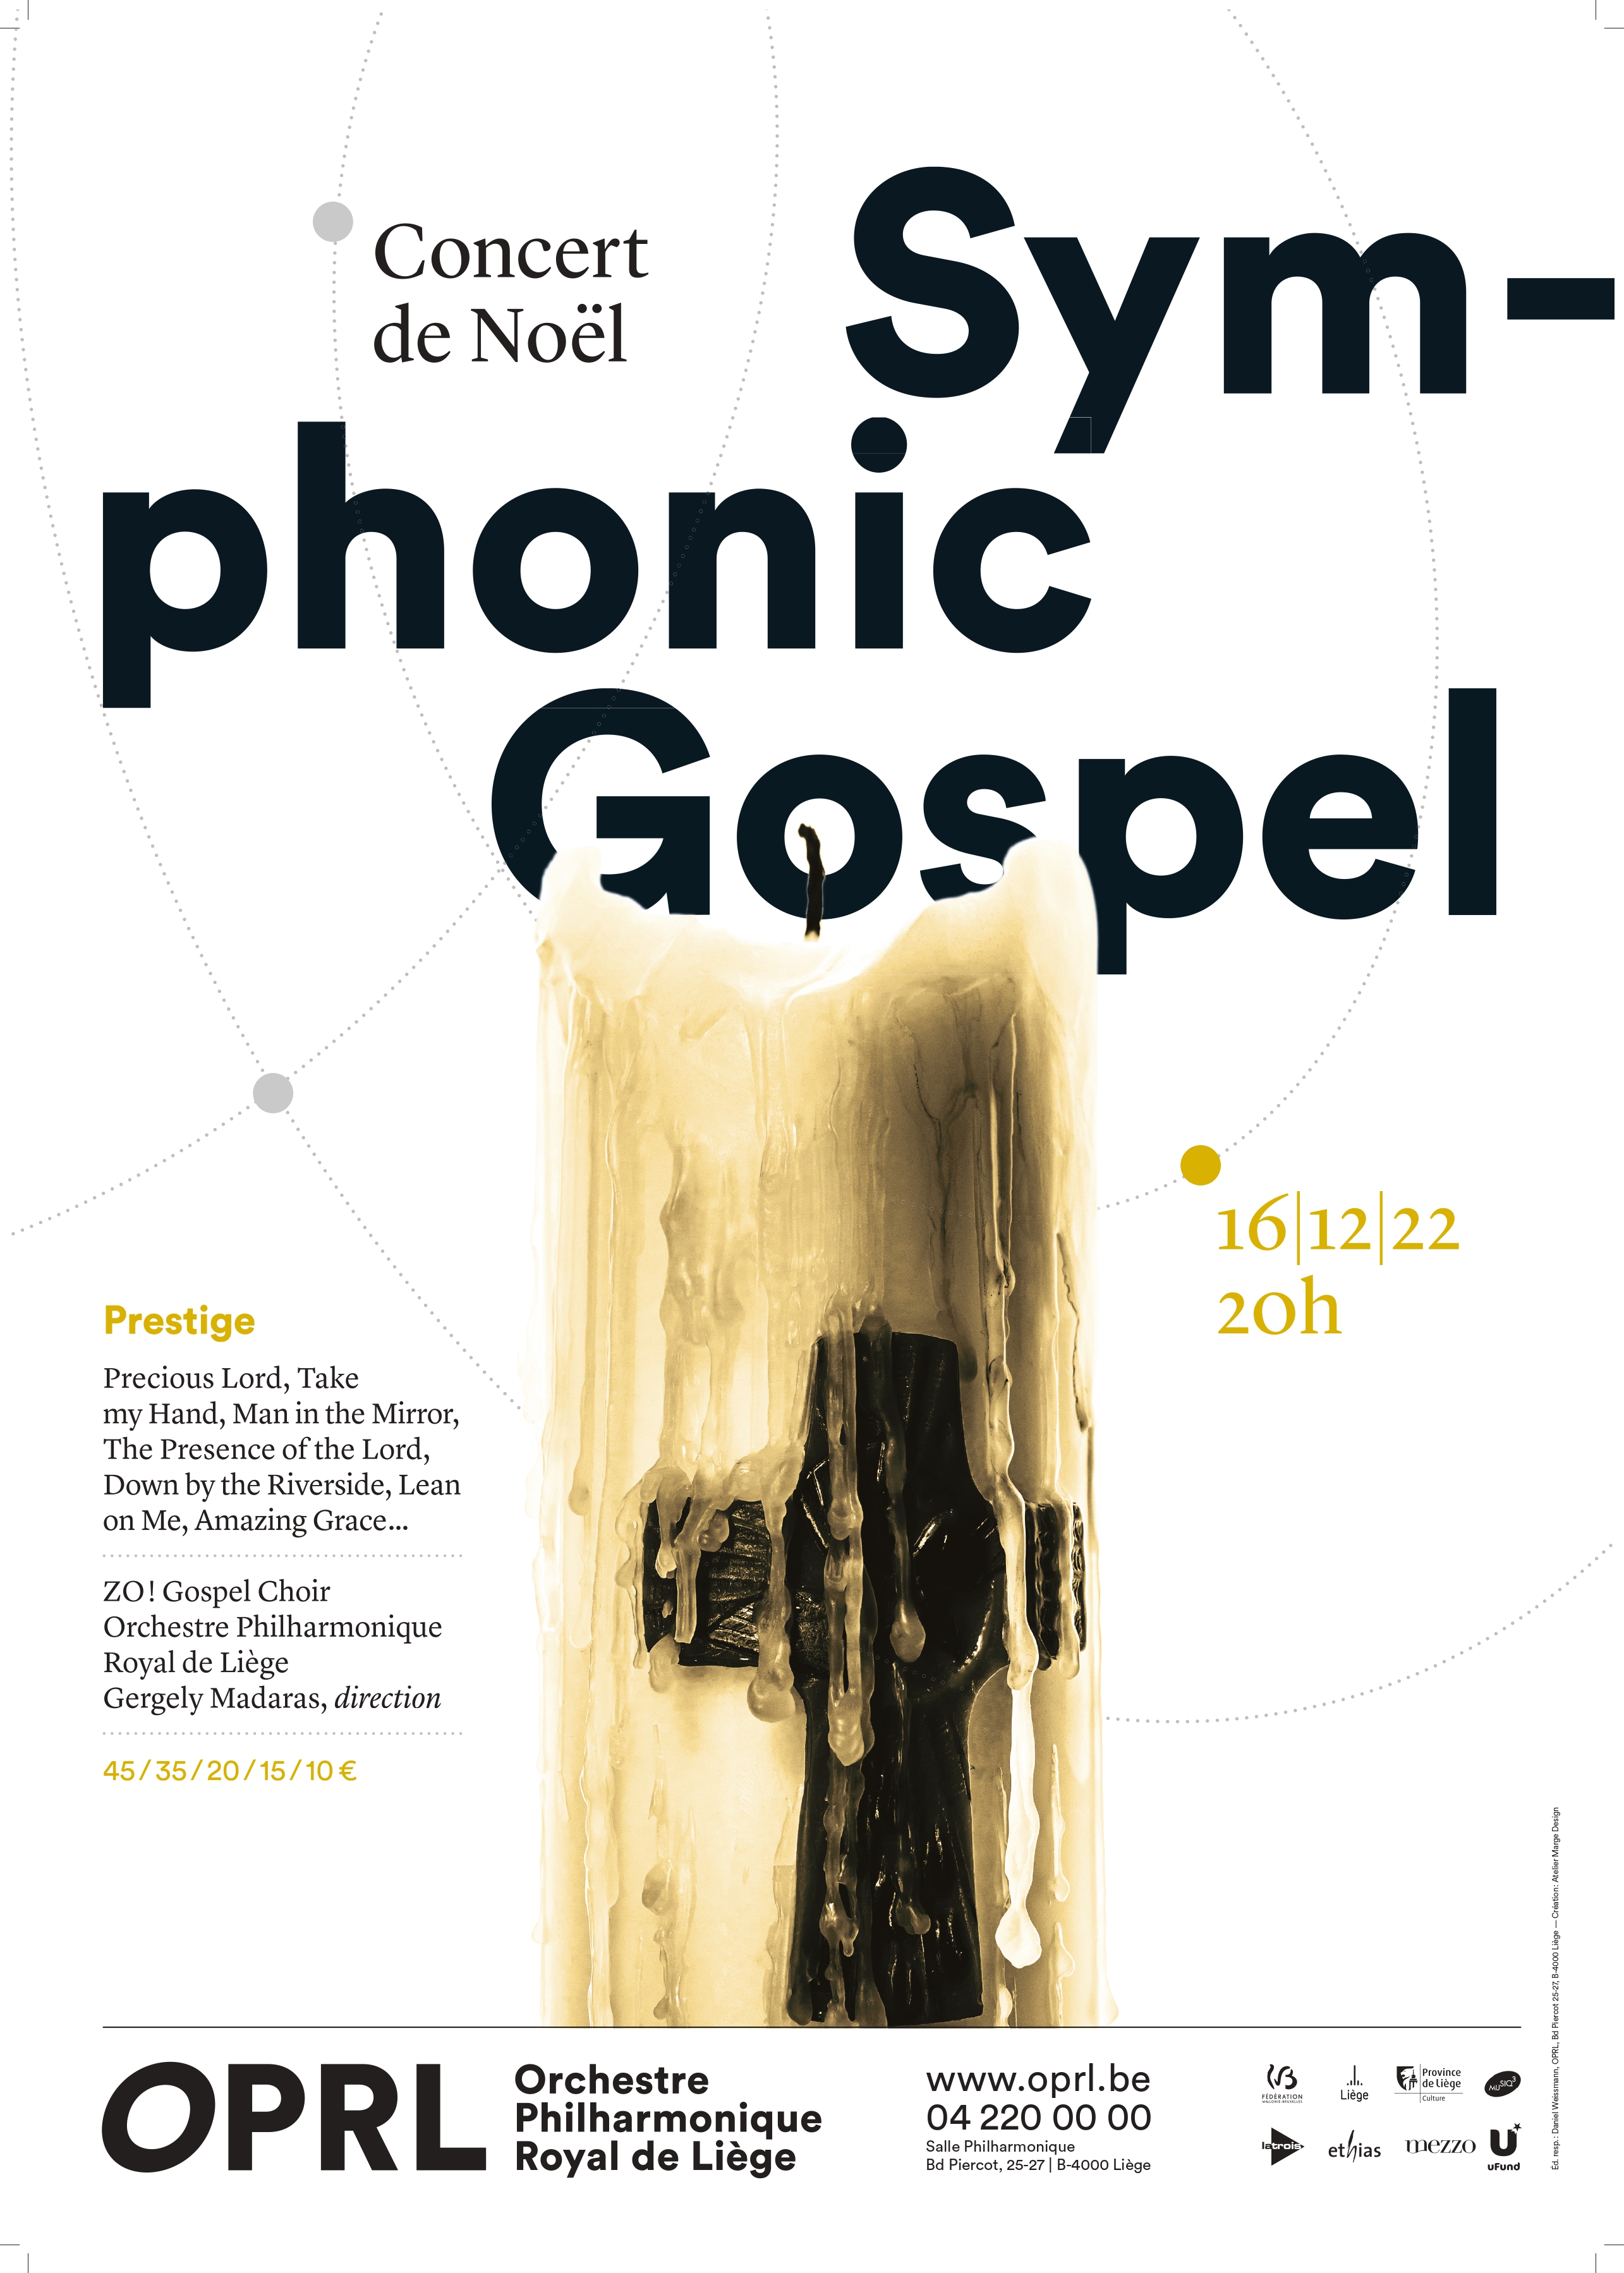 Concert de Noël : Symphonic Gospel